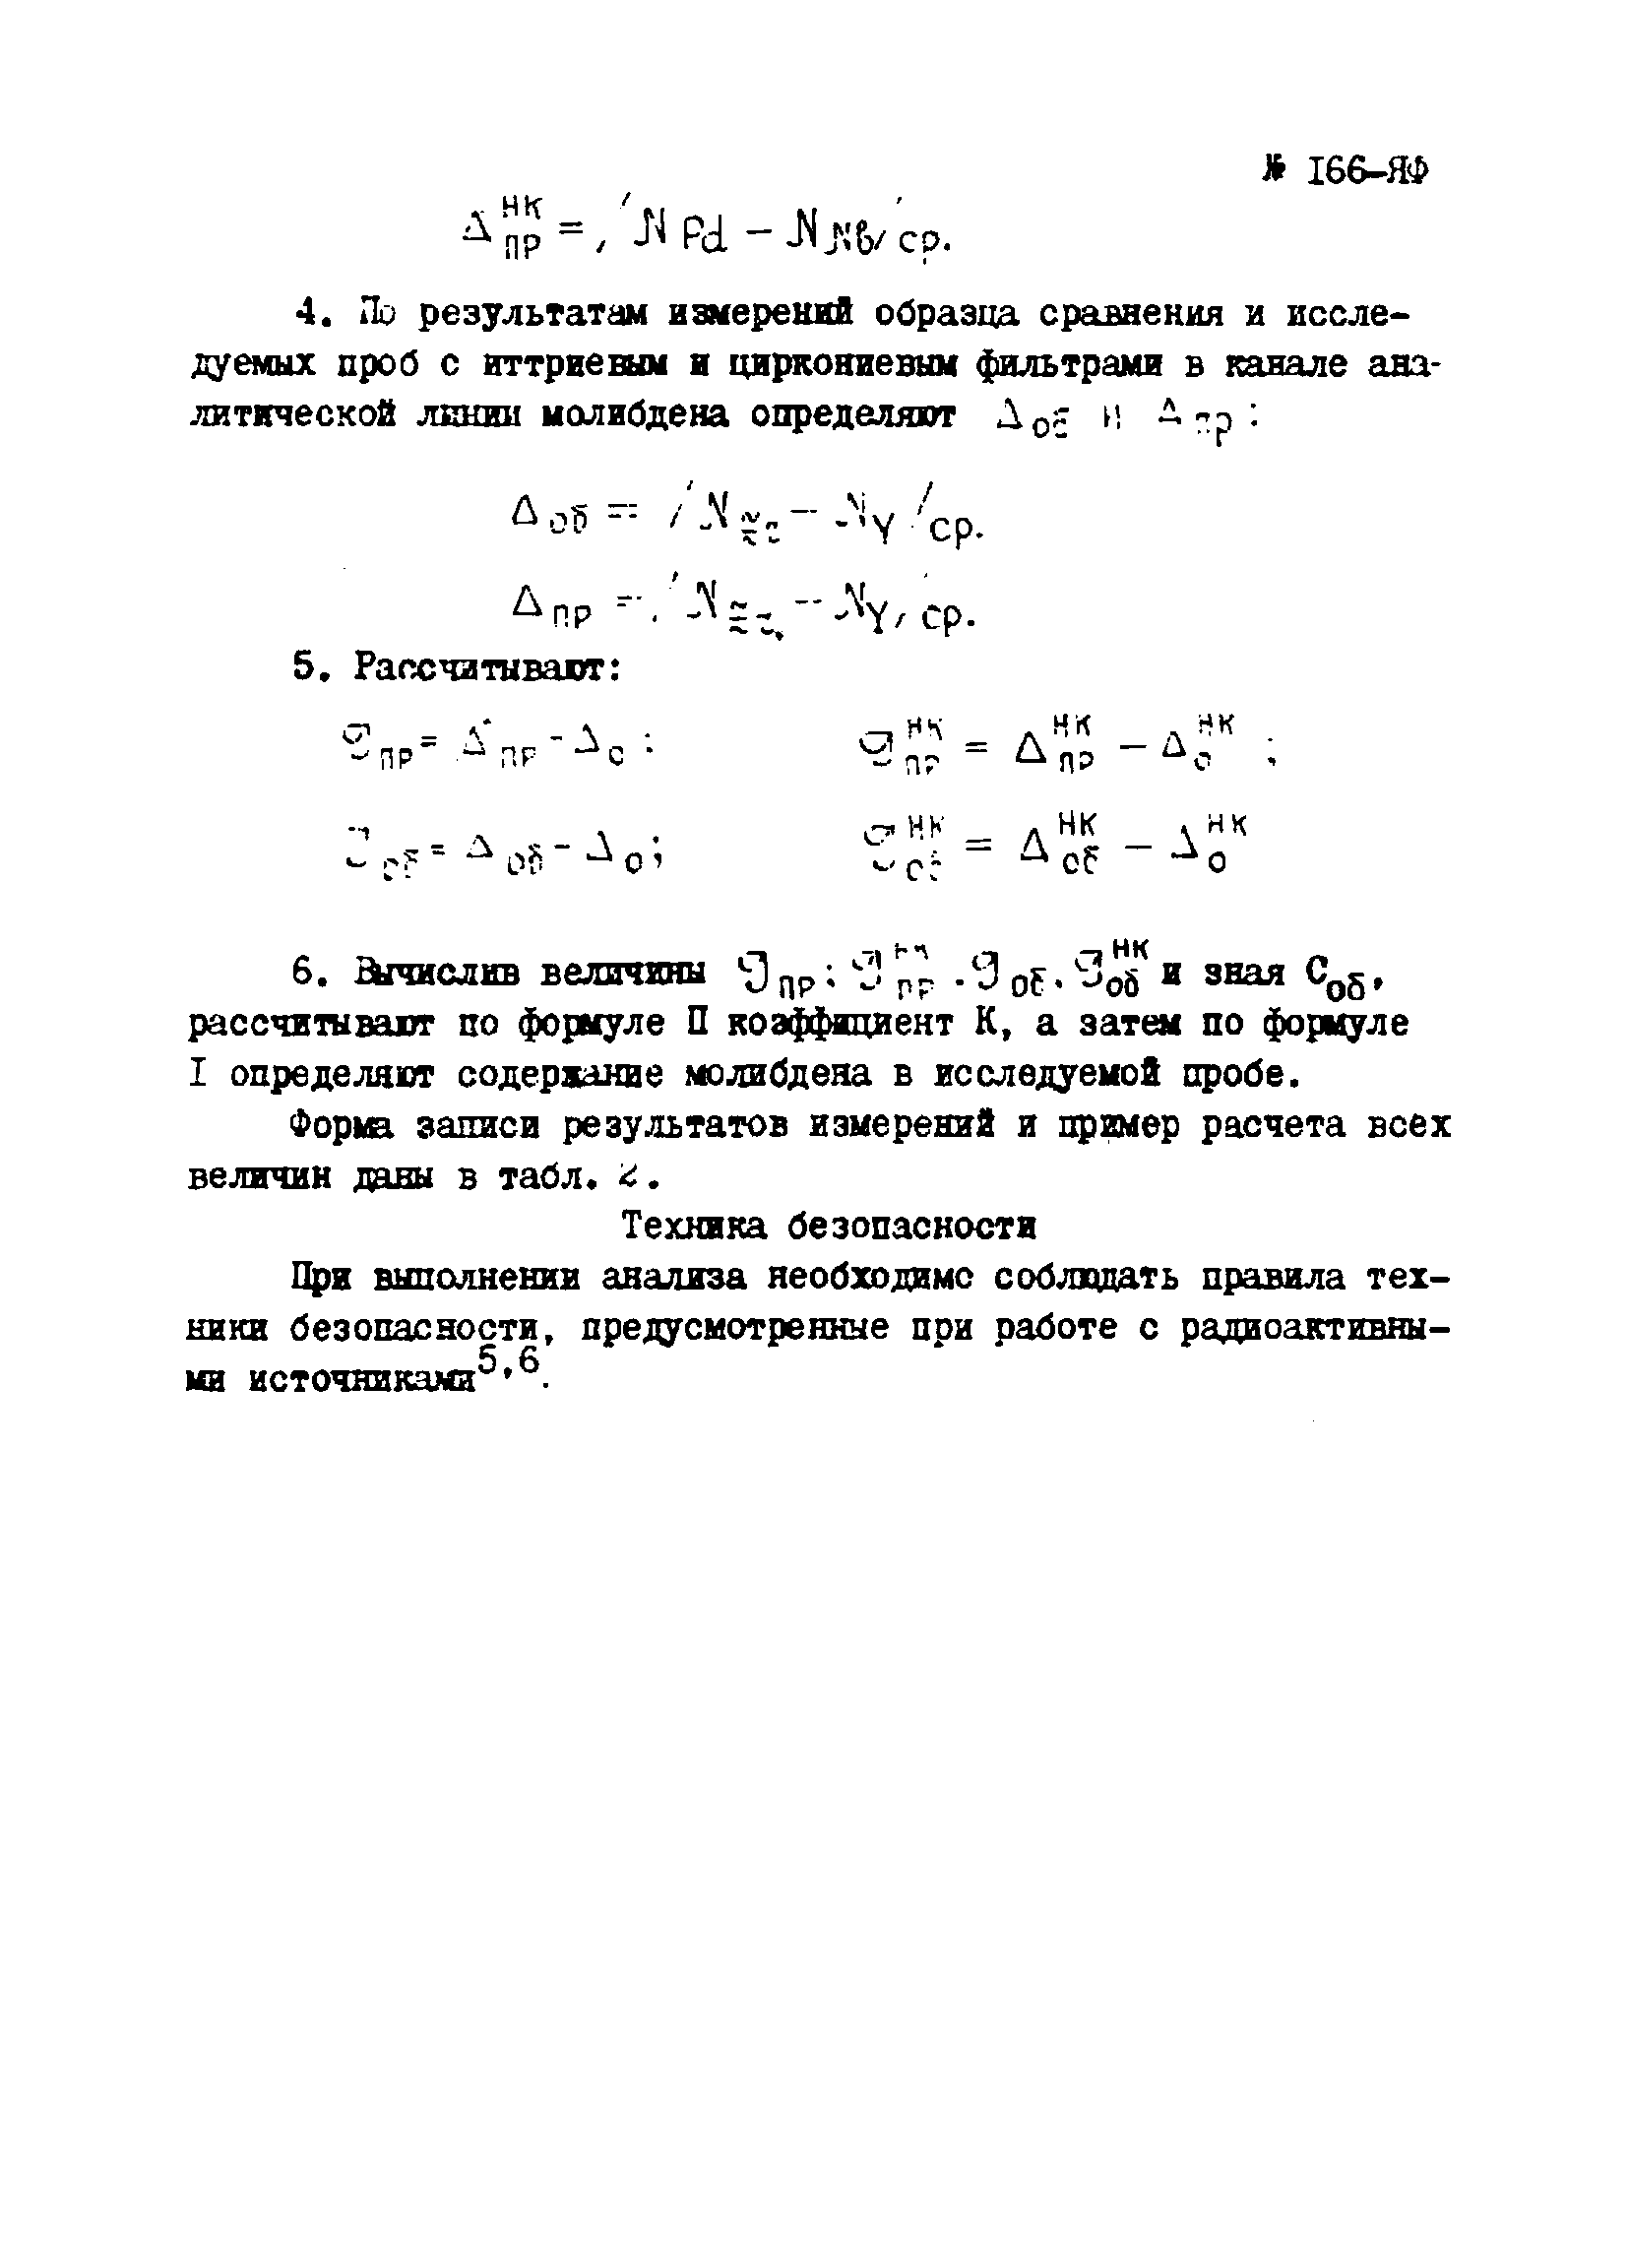 Инструкция НСАМ 166-ЯФ